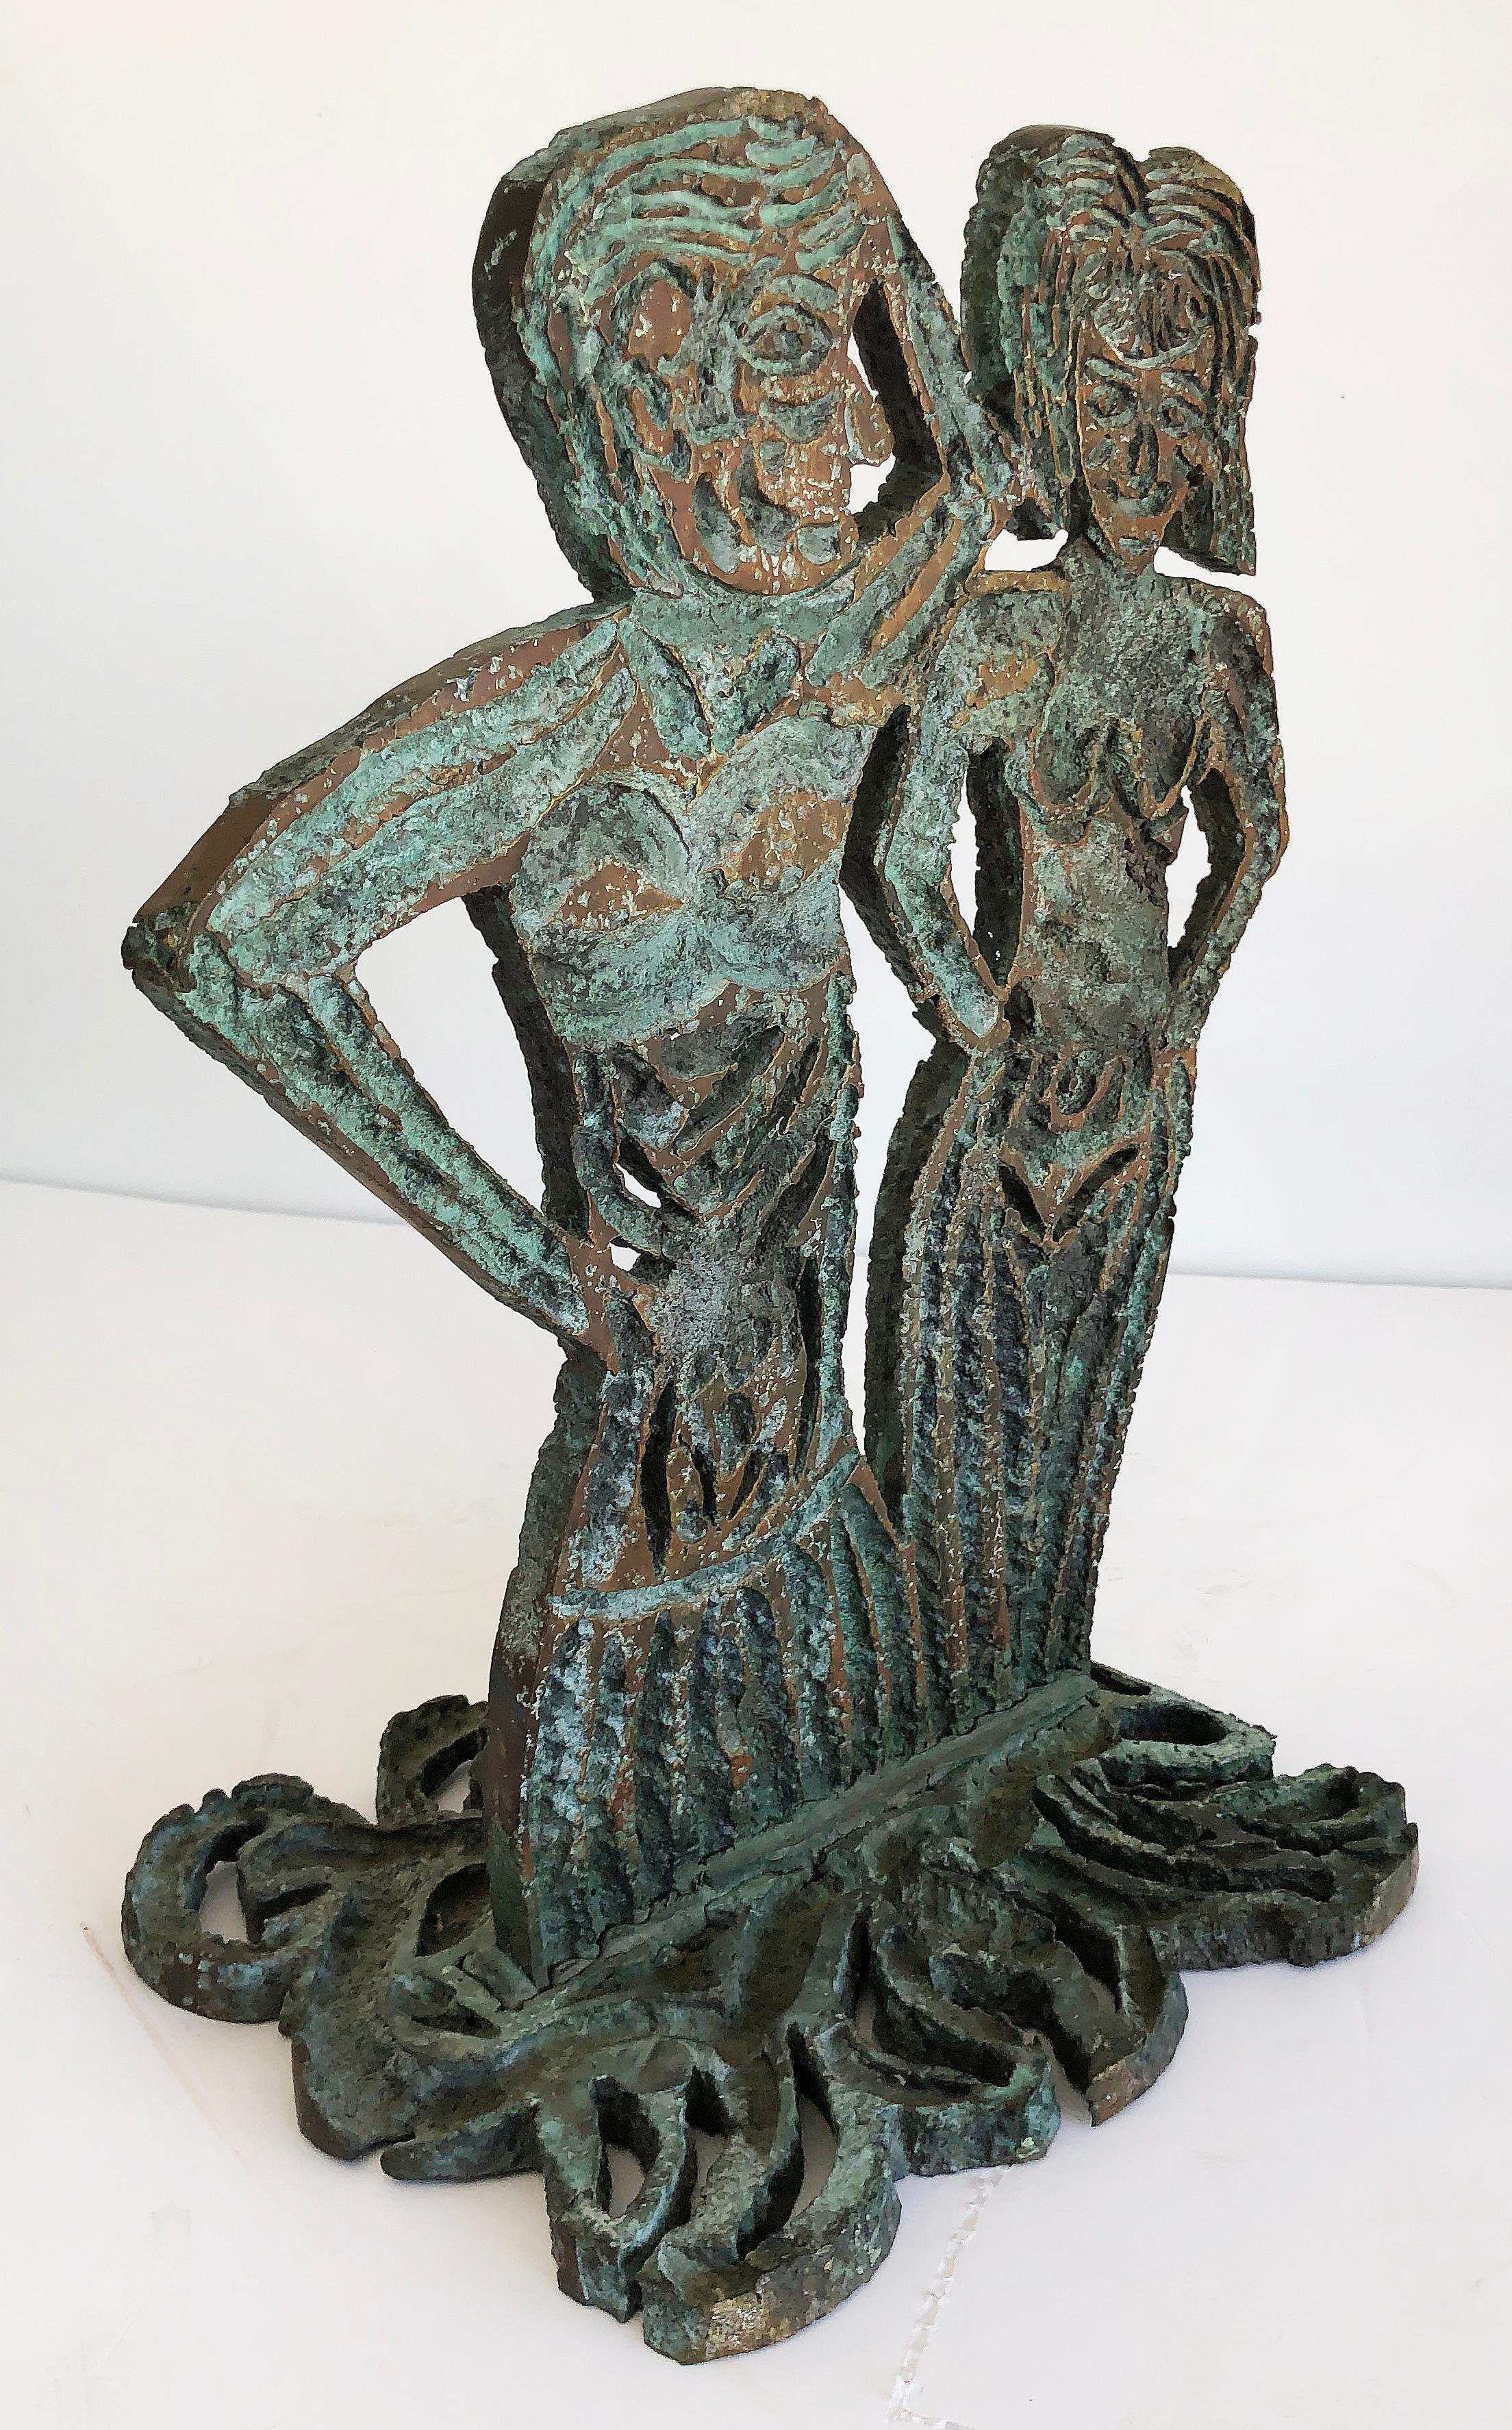 Sculpture figurative en bronze brutaliste de Davis David, 1993

Il s'agit d'une sculpture abstraite en bronze figurative postmoderne brutaliste. La sculpture en bronze représente deux figures abstraites d'un homme et d'une femme. La pièce est